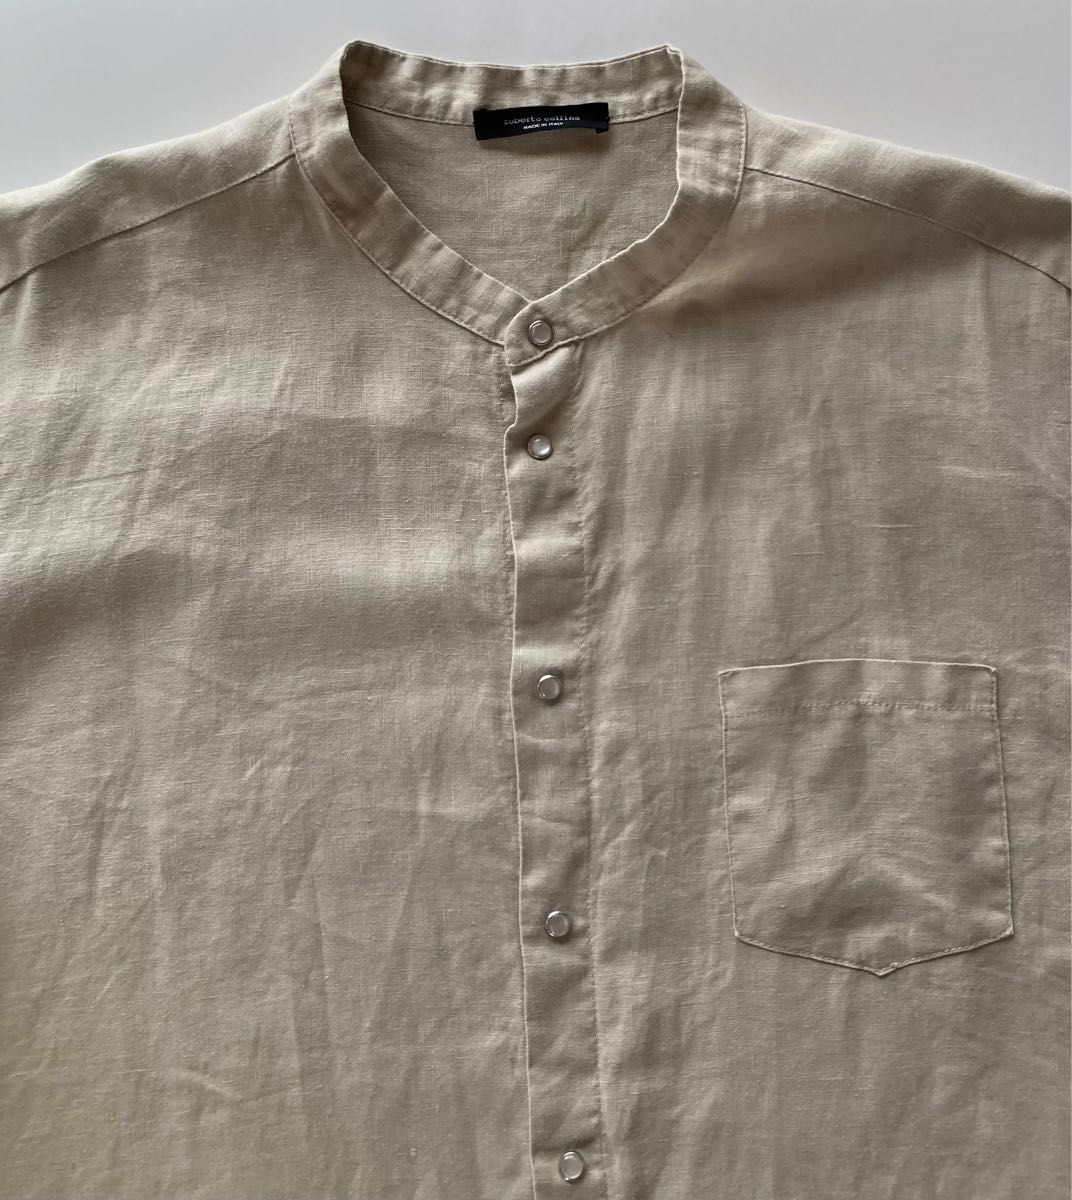 roberto collina イタリア製 半袖リネンバンドカラーシャツ52 